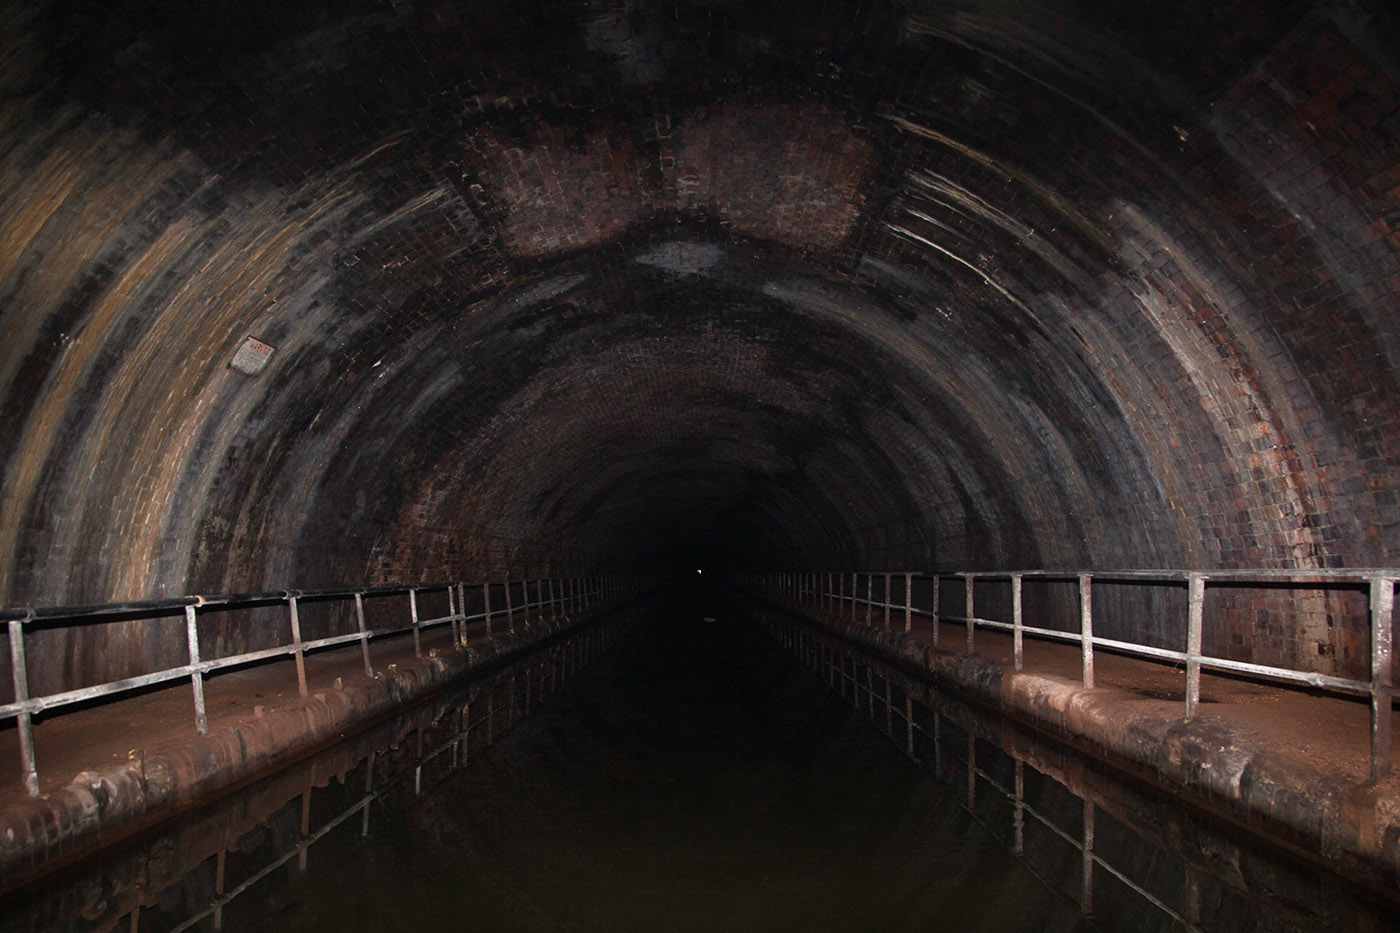 tunnel canal birmingham waterway speleothem accretion bcn